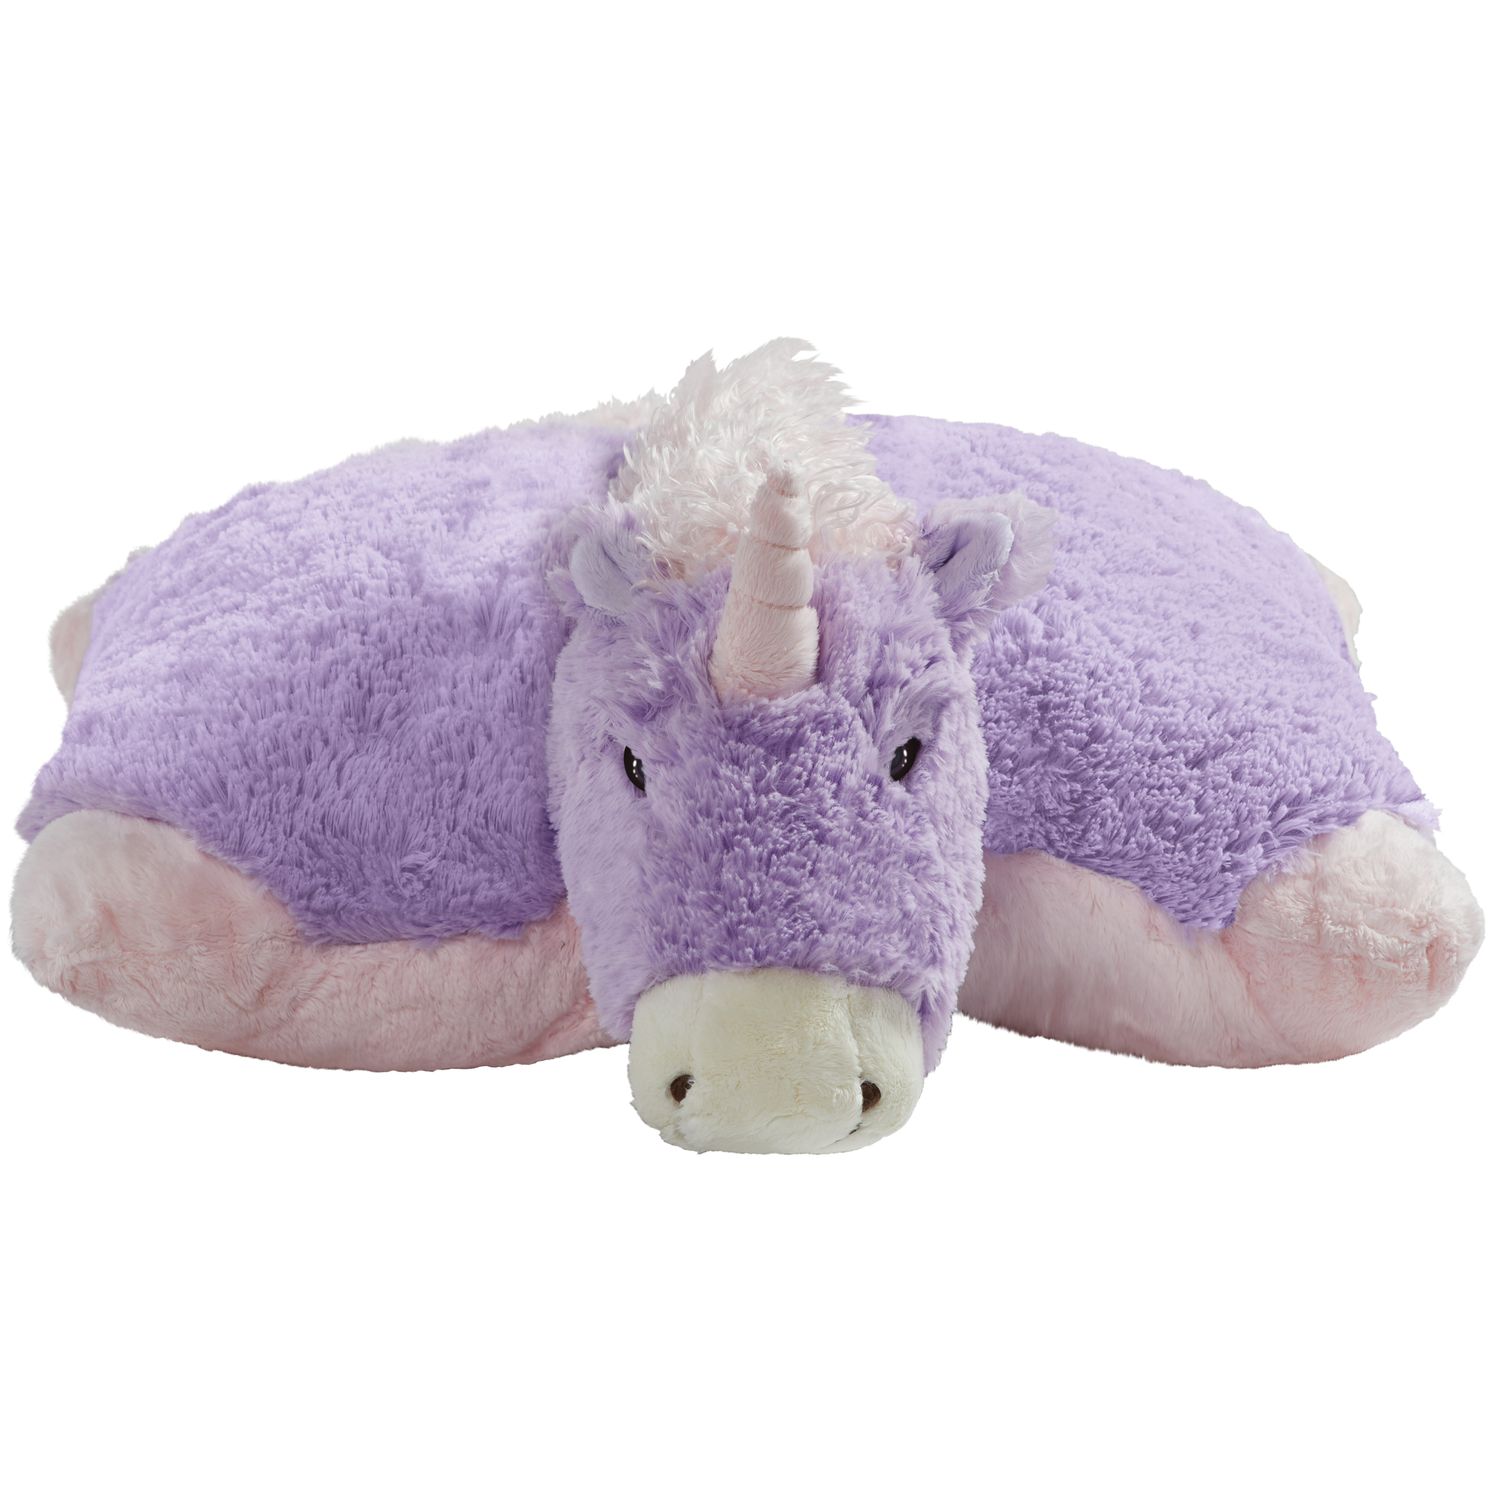 unicorn stuffed animal pillow